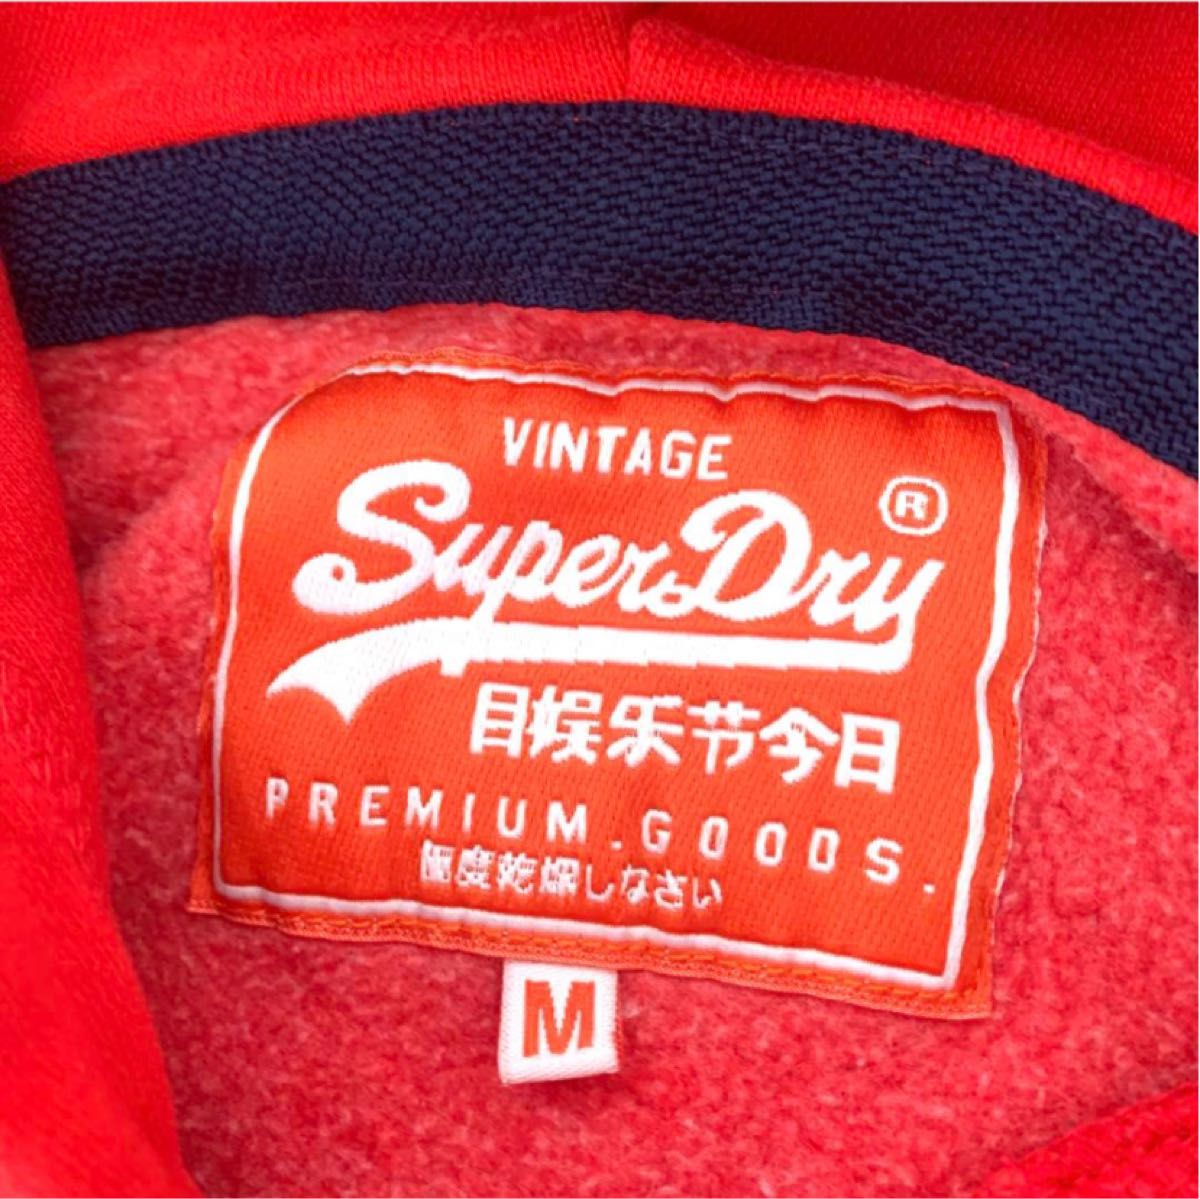 Superdry 極度乾燥しなさい プルオーバーパーカー 日本語プリント 赤